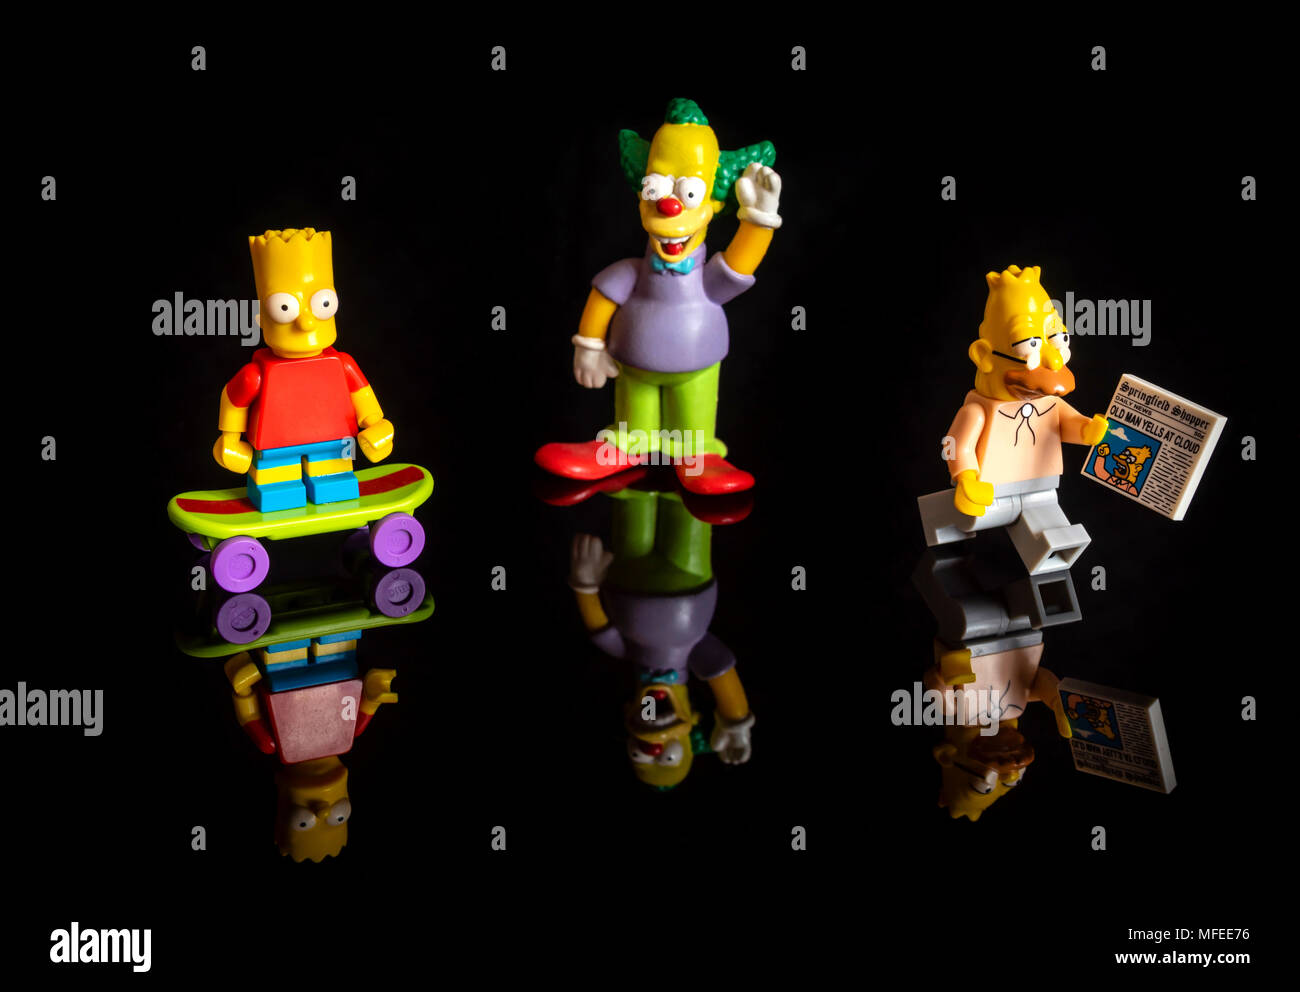 Los Simpsons Lego figuras en miniatura (Bart Simpson, Krusty el payaso y grampa Simpson) sobre fondo negro reflectante Foto de stock